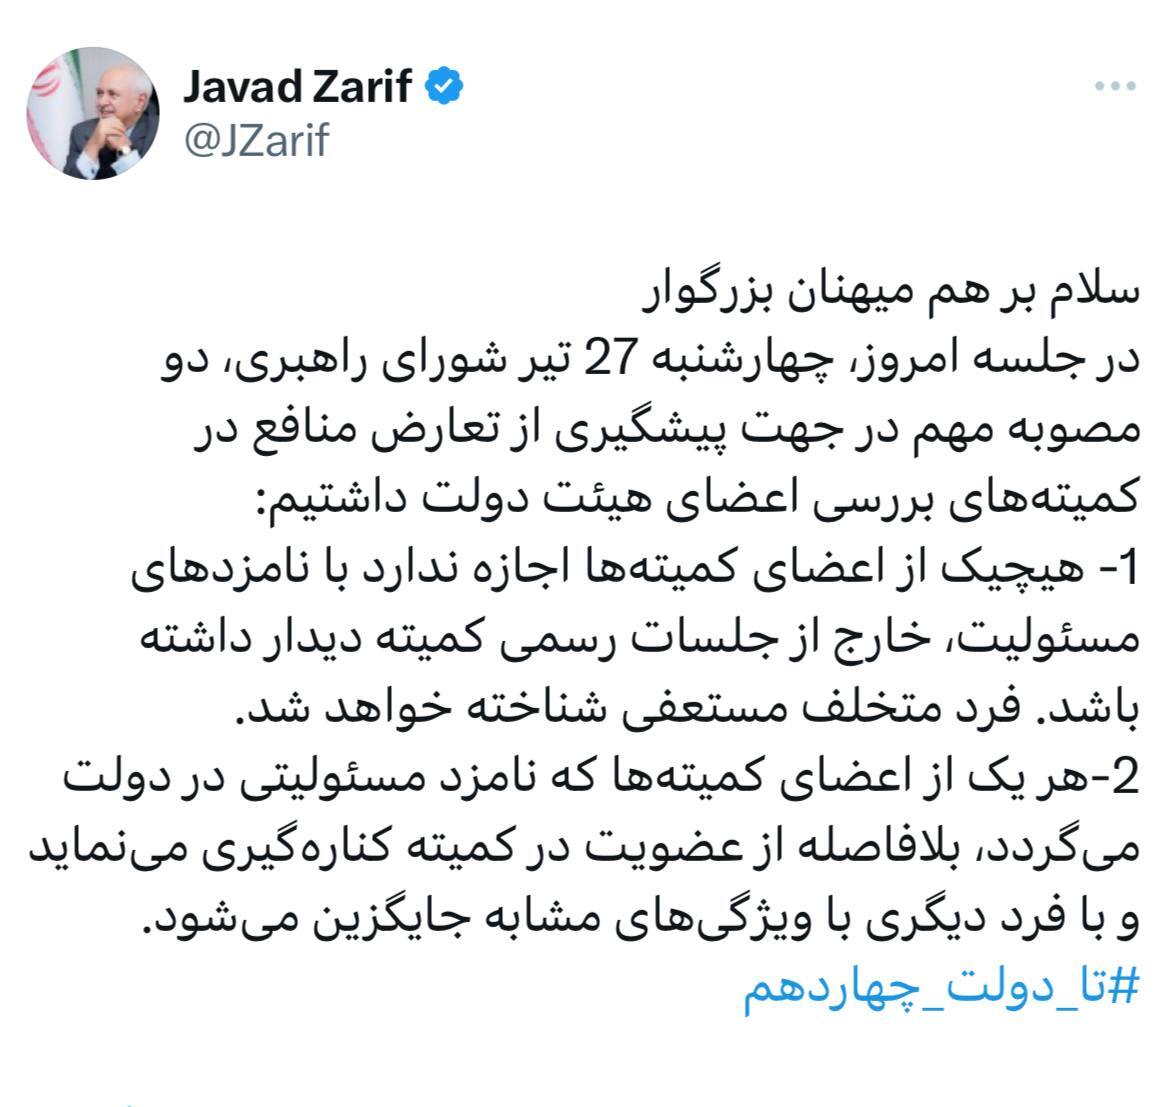 ظریف: هیچیک از اعضای کمیته‌ها اجازه ندارد خارج از جلسات رسمی با نامزد‌های مسئولیت، دیدار کند